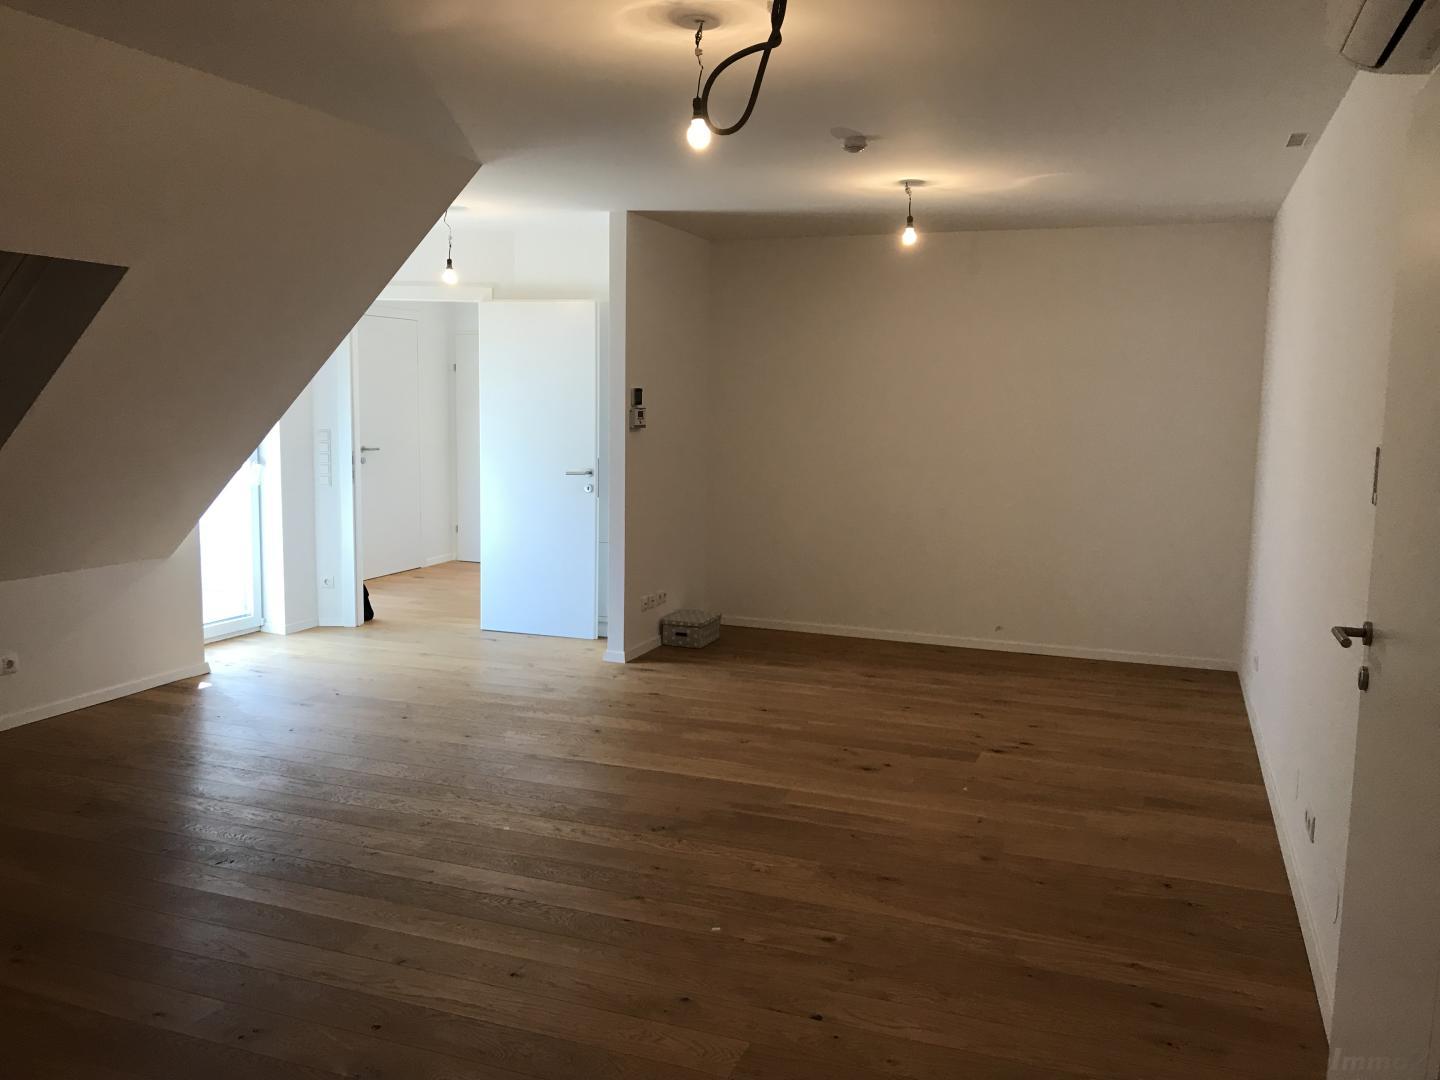 Wohnung zum Kaufen: 1100 Wien,Favoriten - IMG_3510